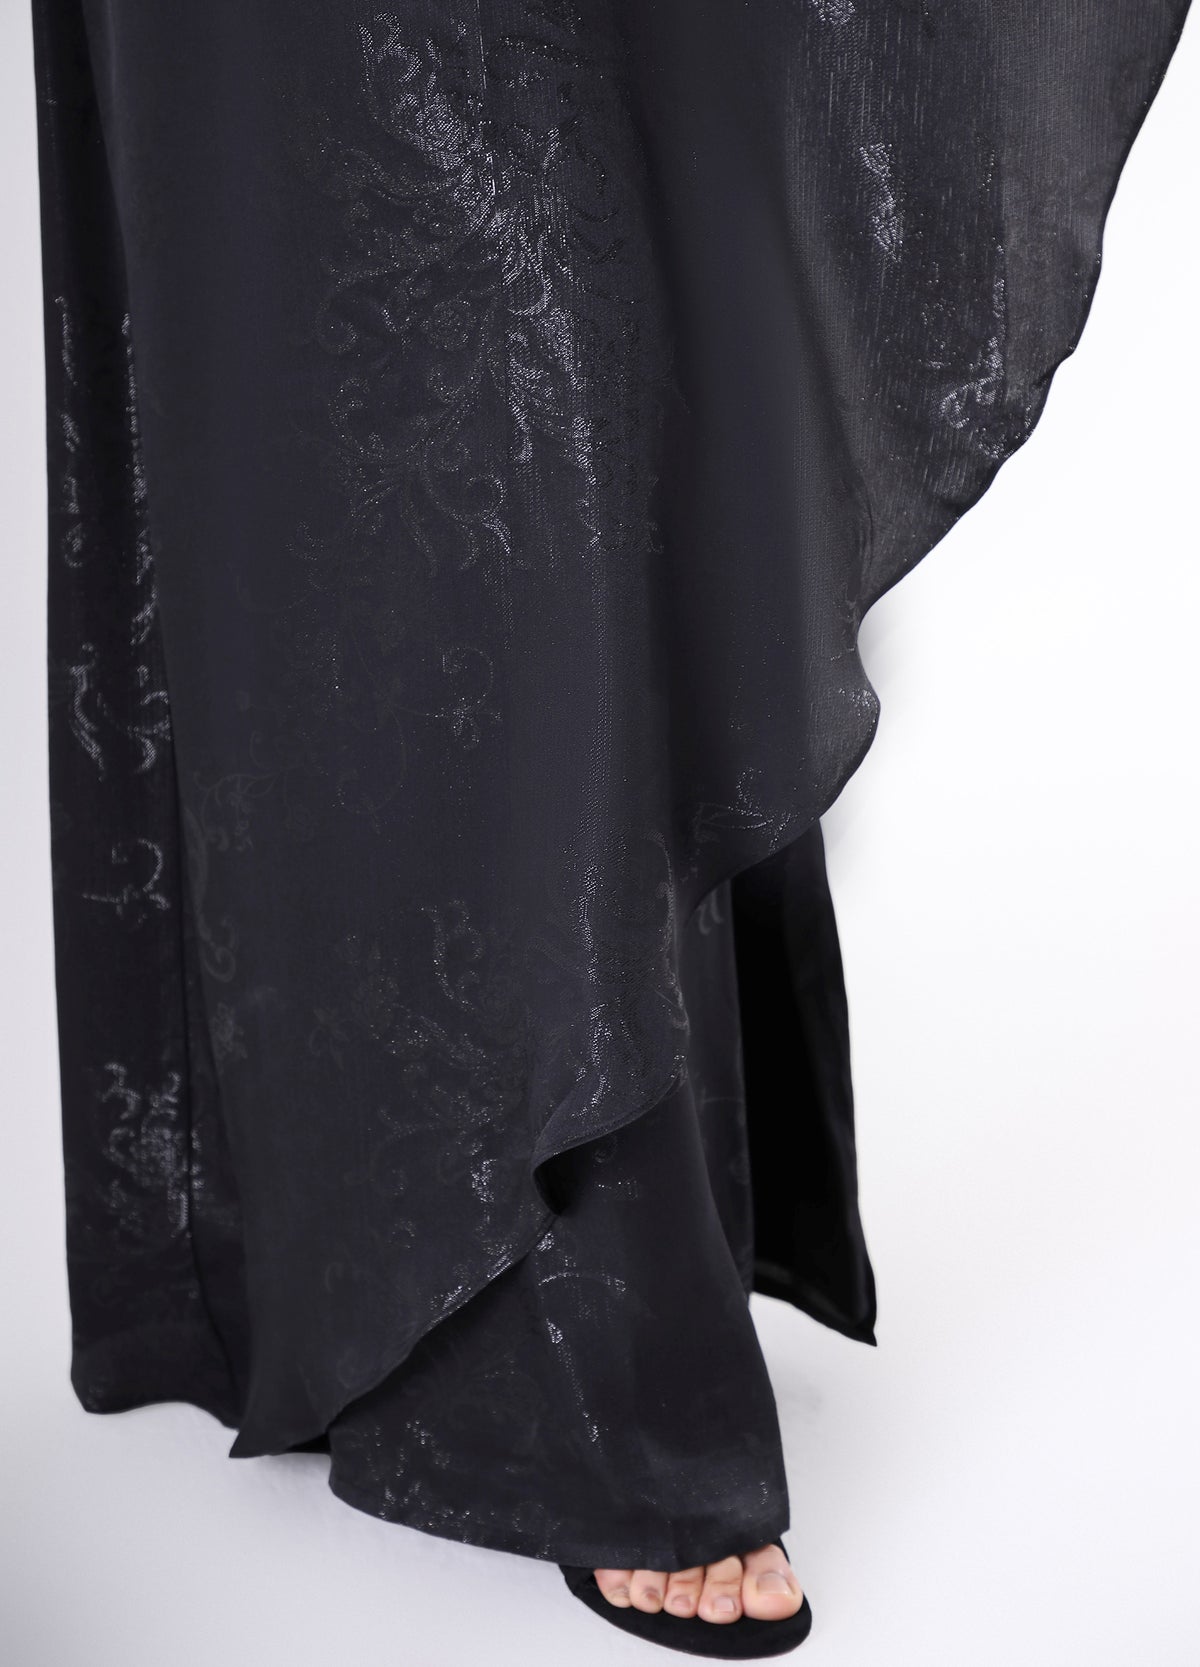 Edda dress - Black flowers on black